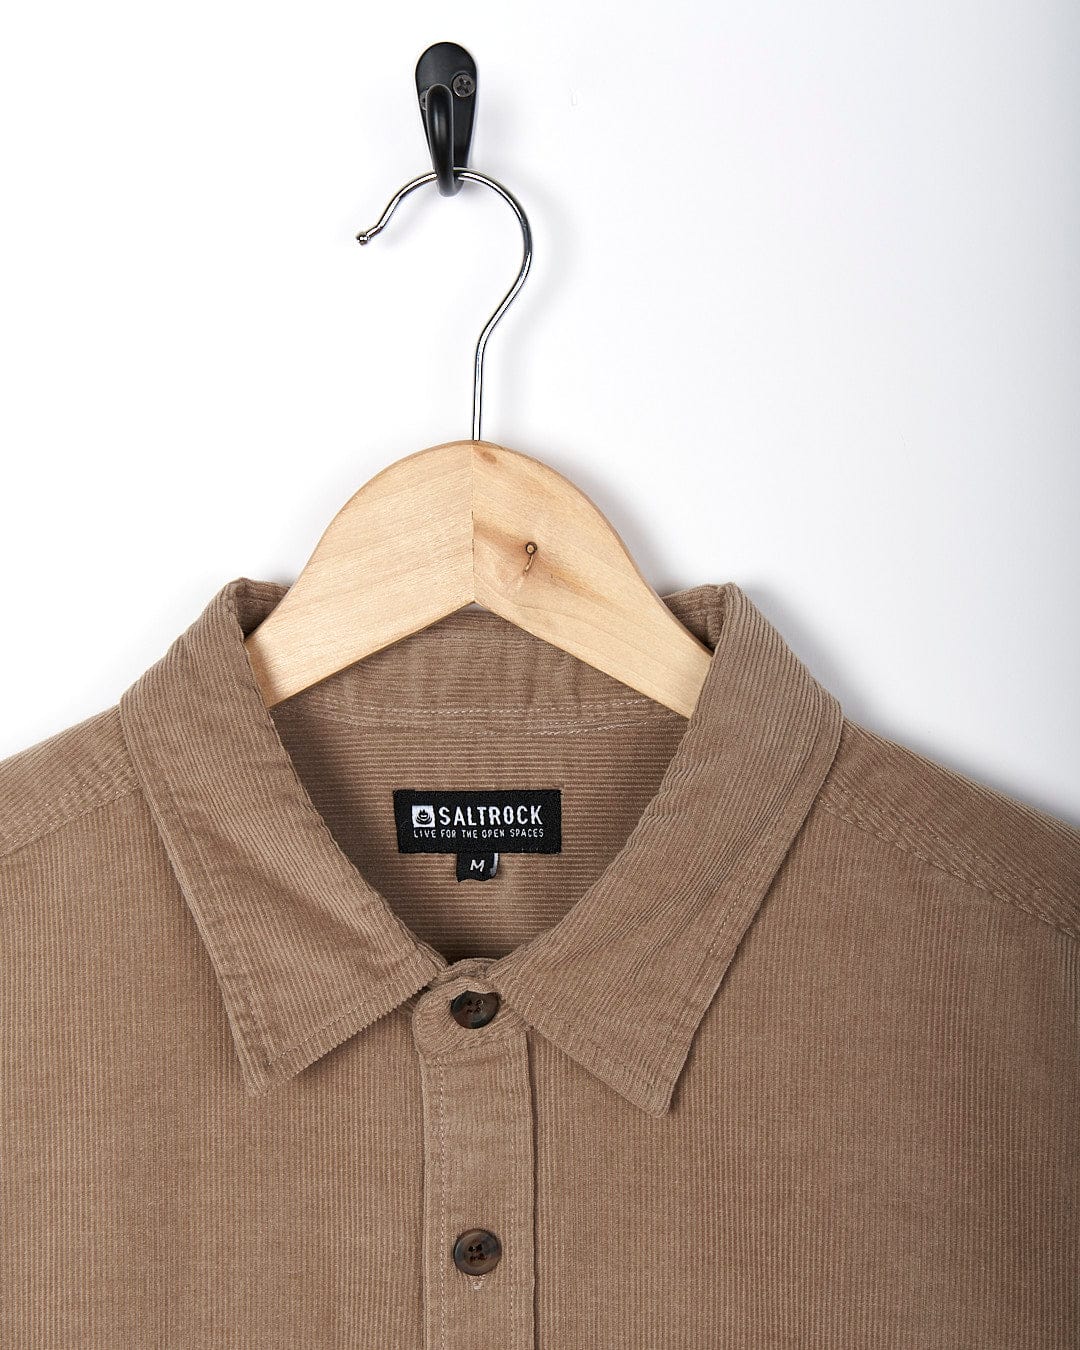 A Saltrock - Men Corduroy Shirt - Light Brown hanging on a hanger.